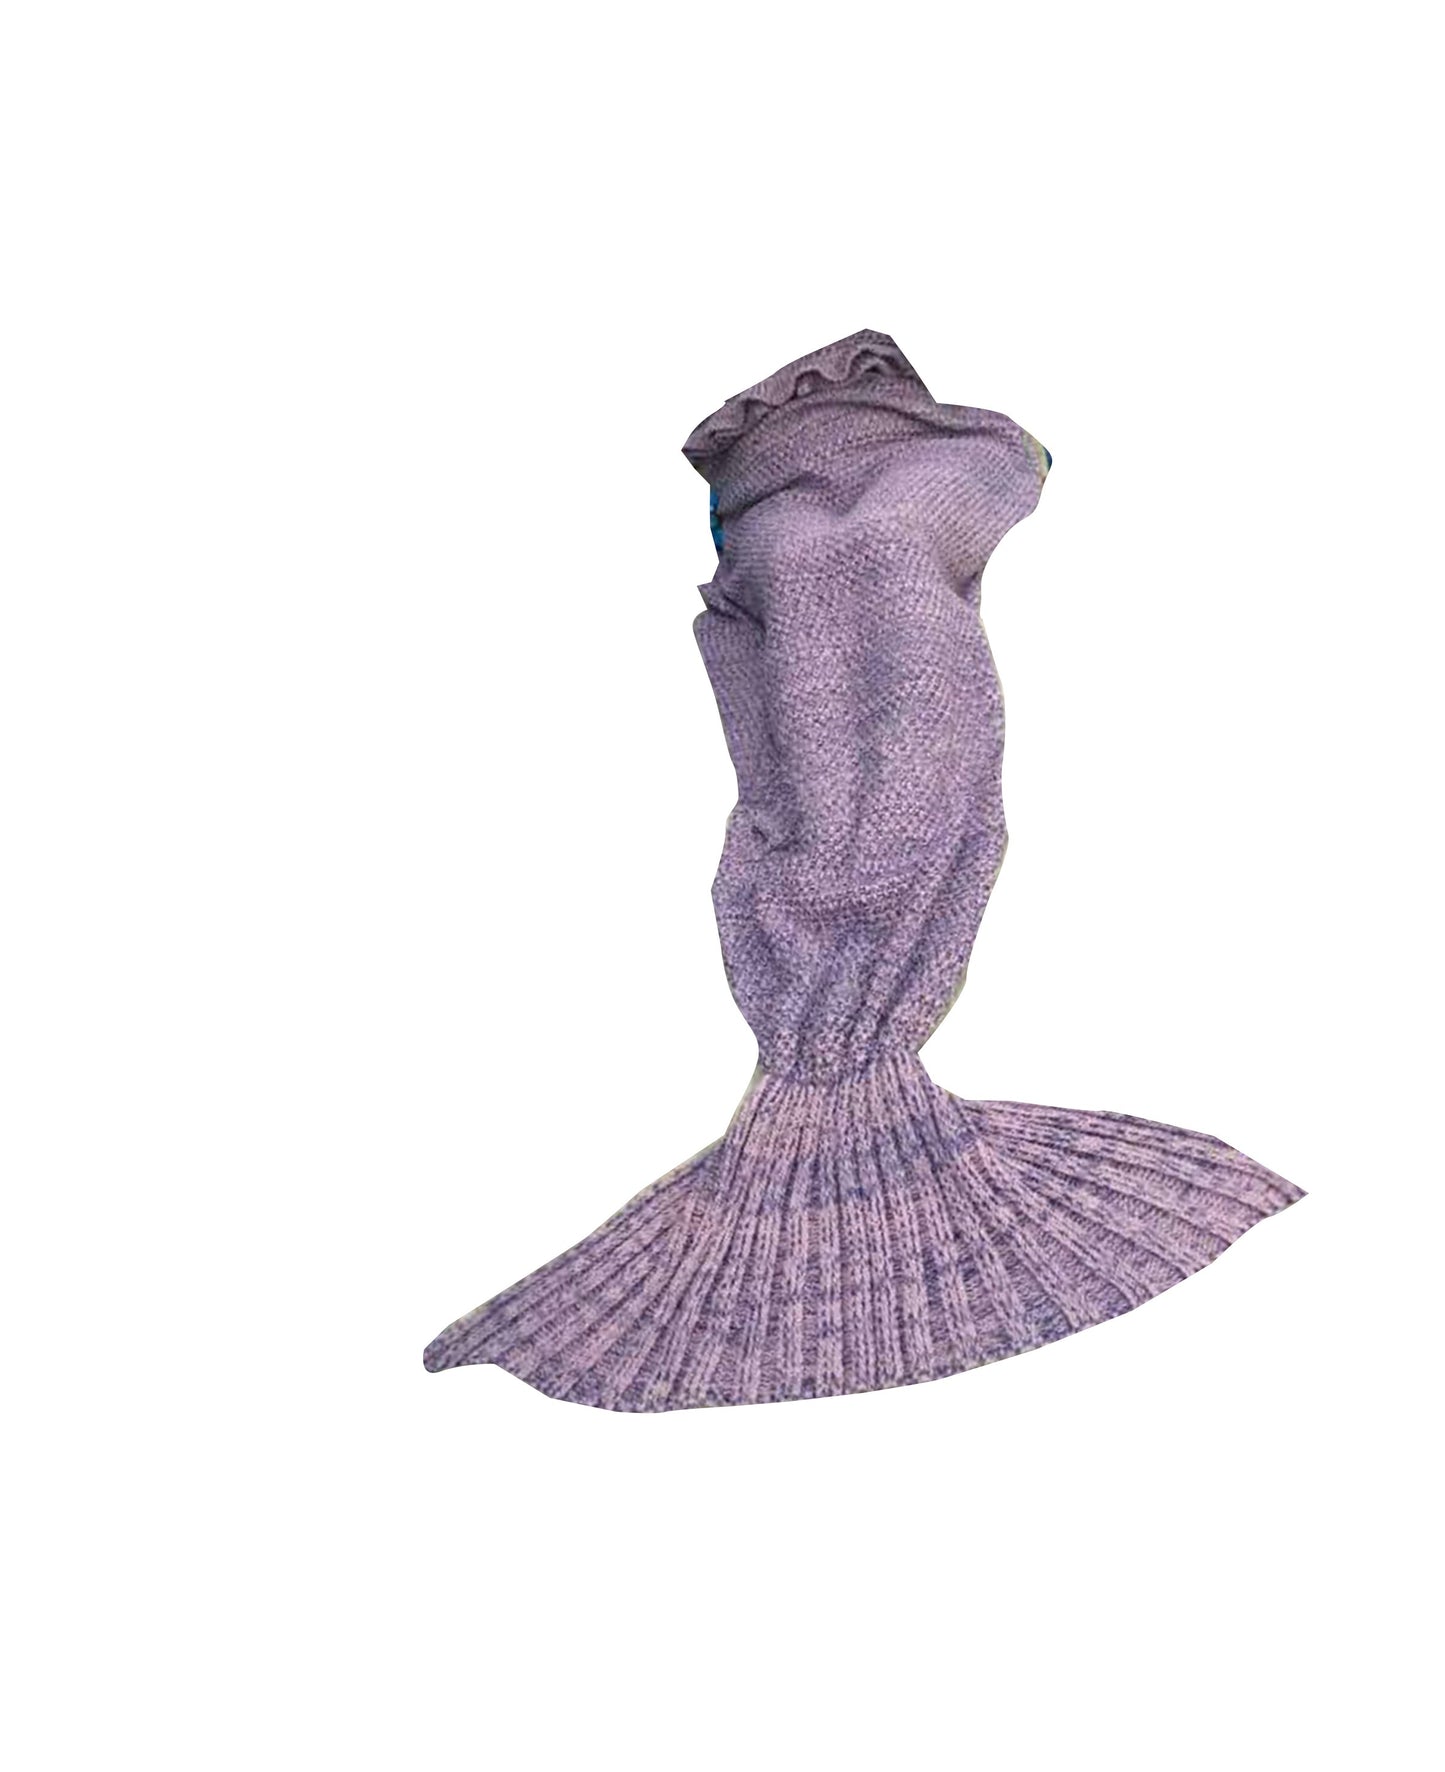 Crochet Adult/Teen/Kids Ruffle Top Mermaid Blanket with Tail Purple-Pink